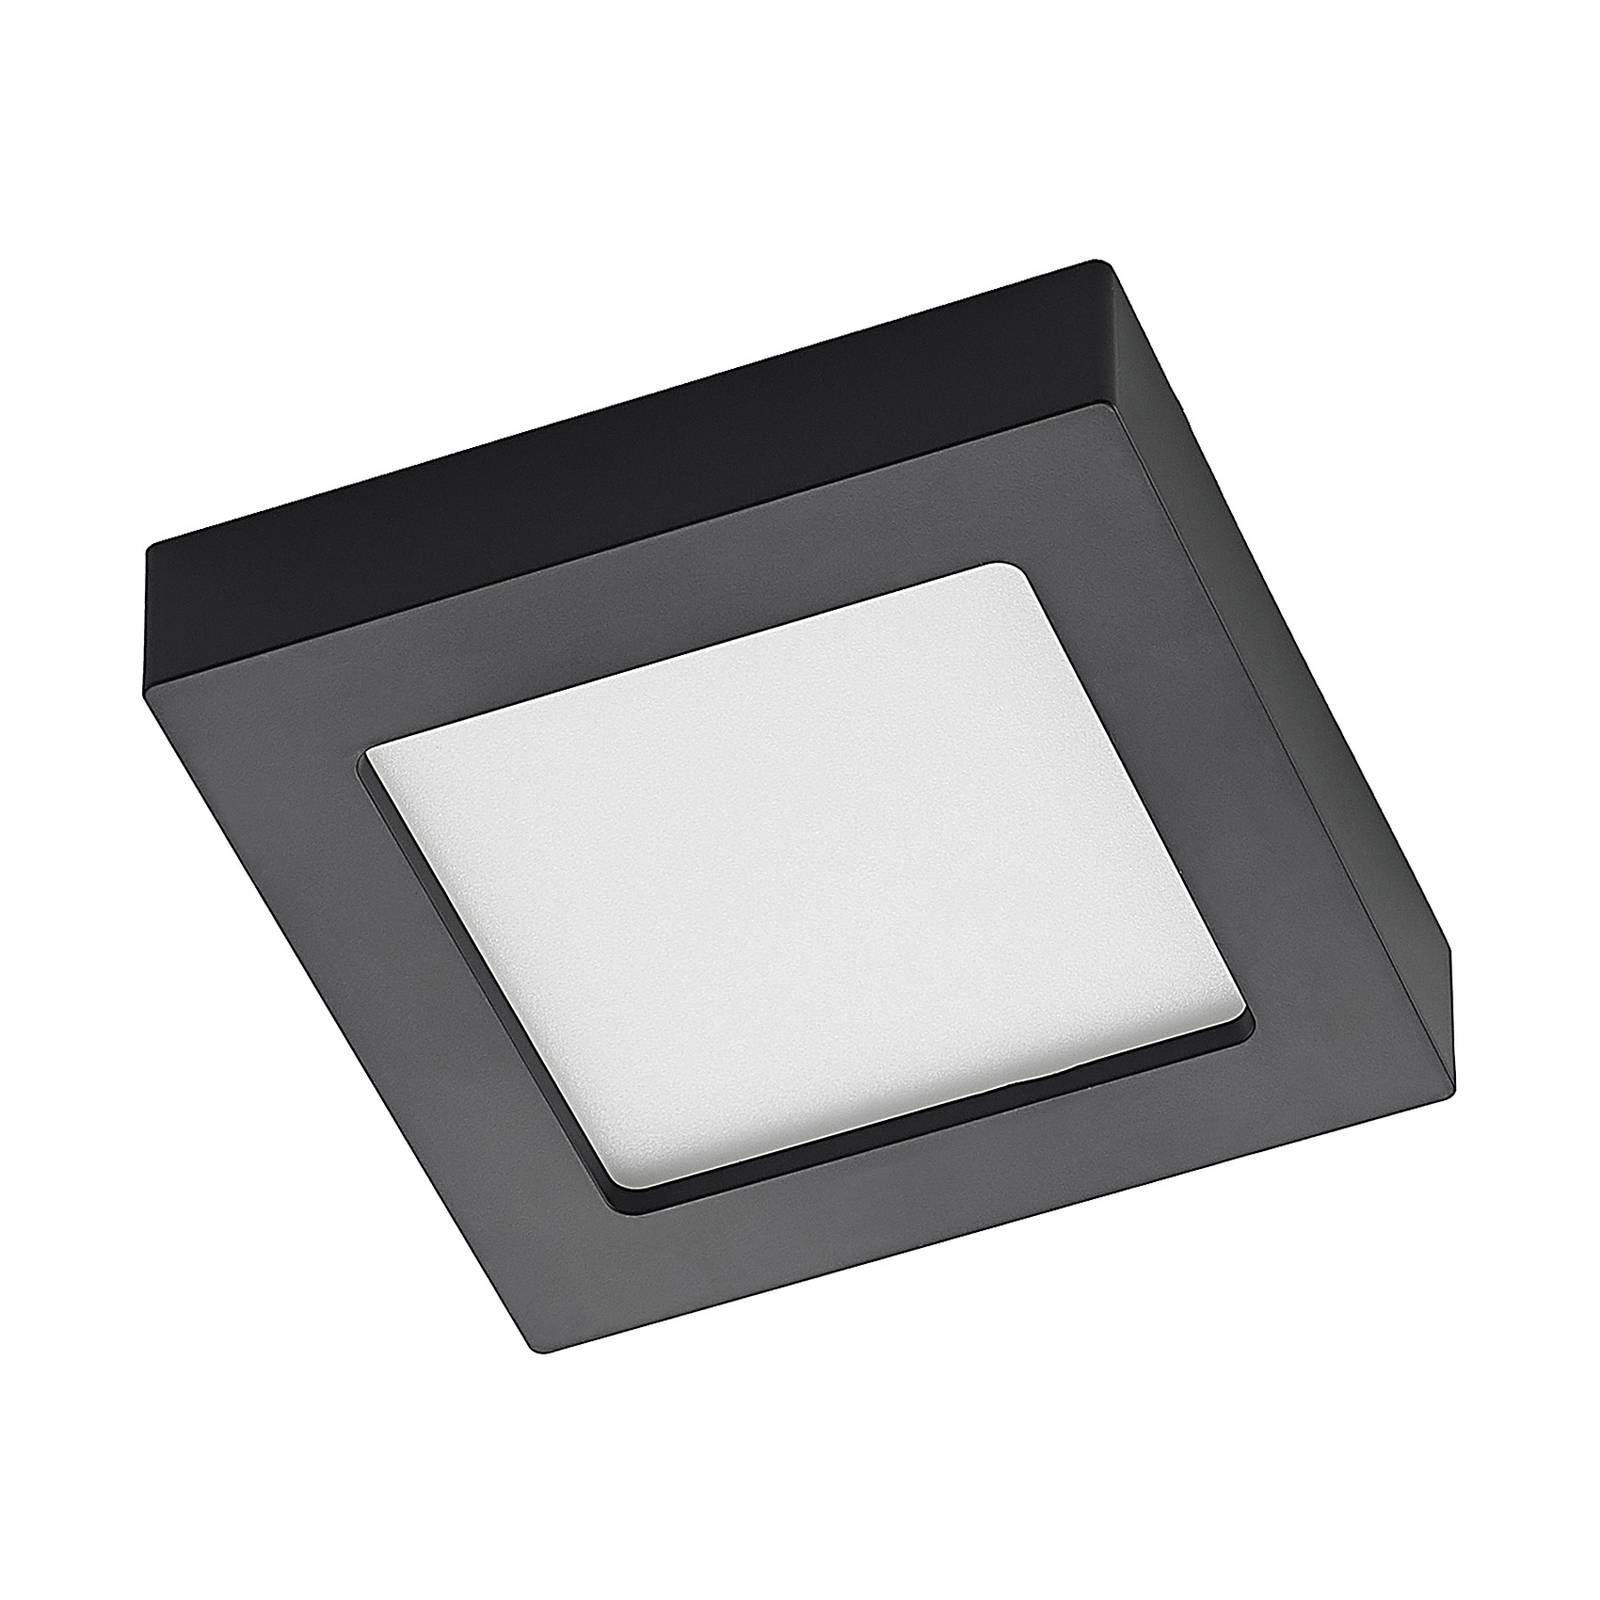 Prios Alette LED-Deckenlampe, schwarz, CCT, 12 W